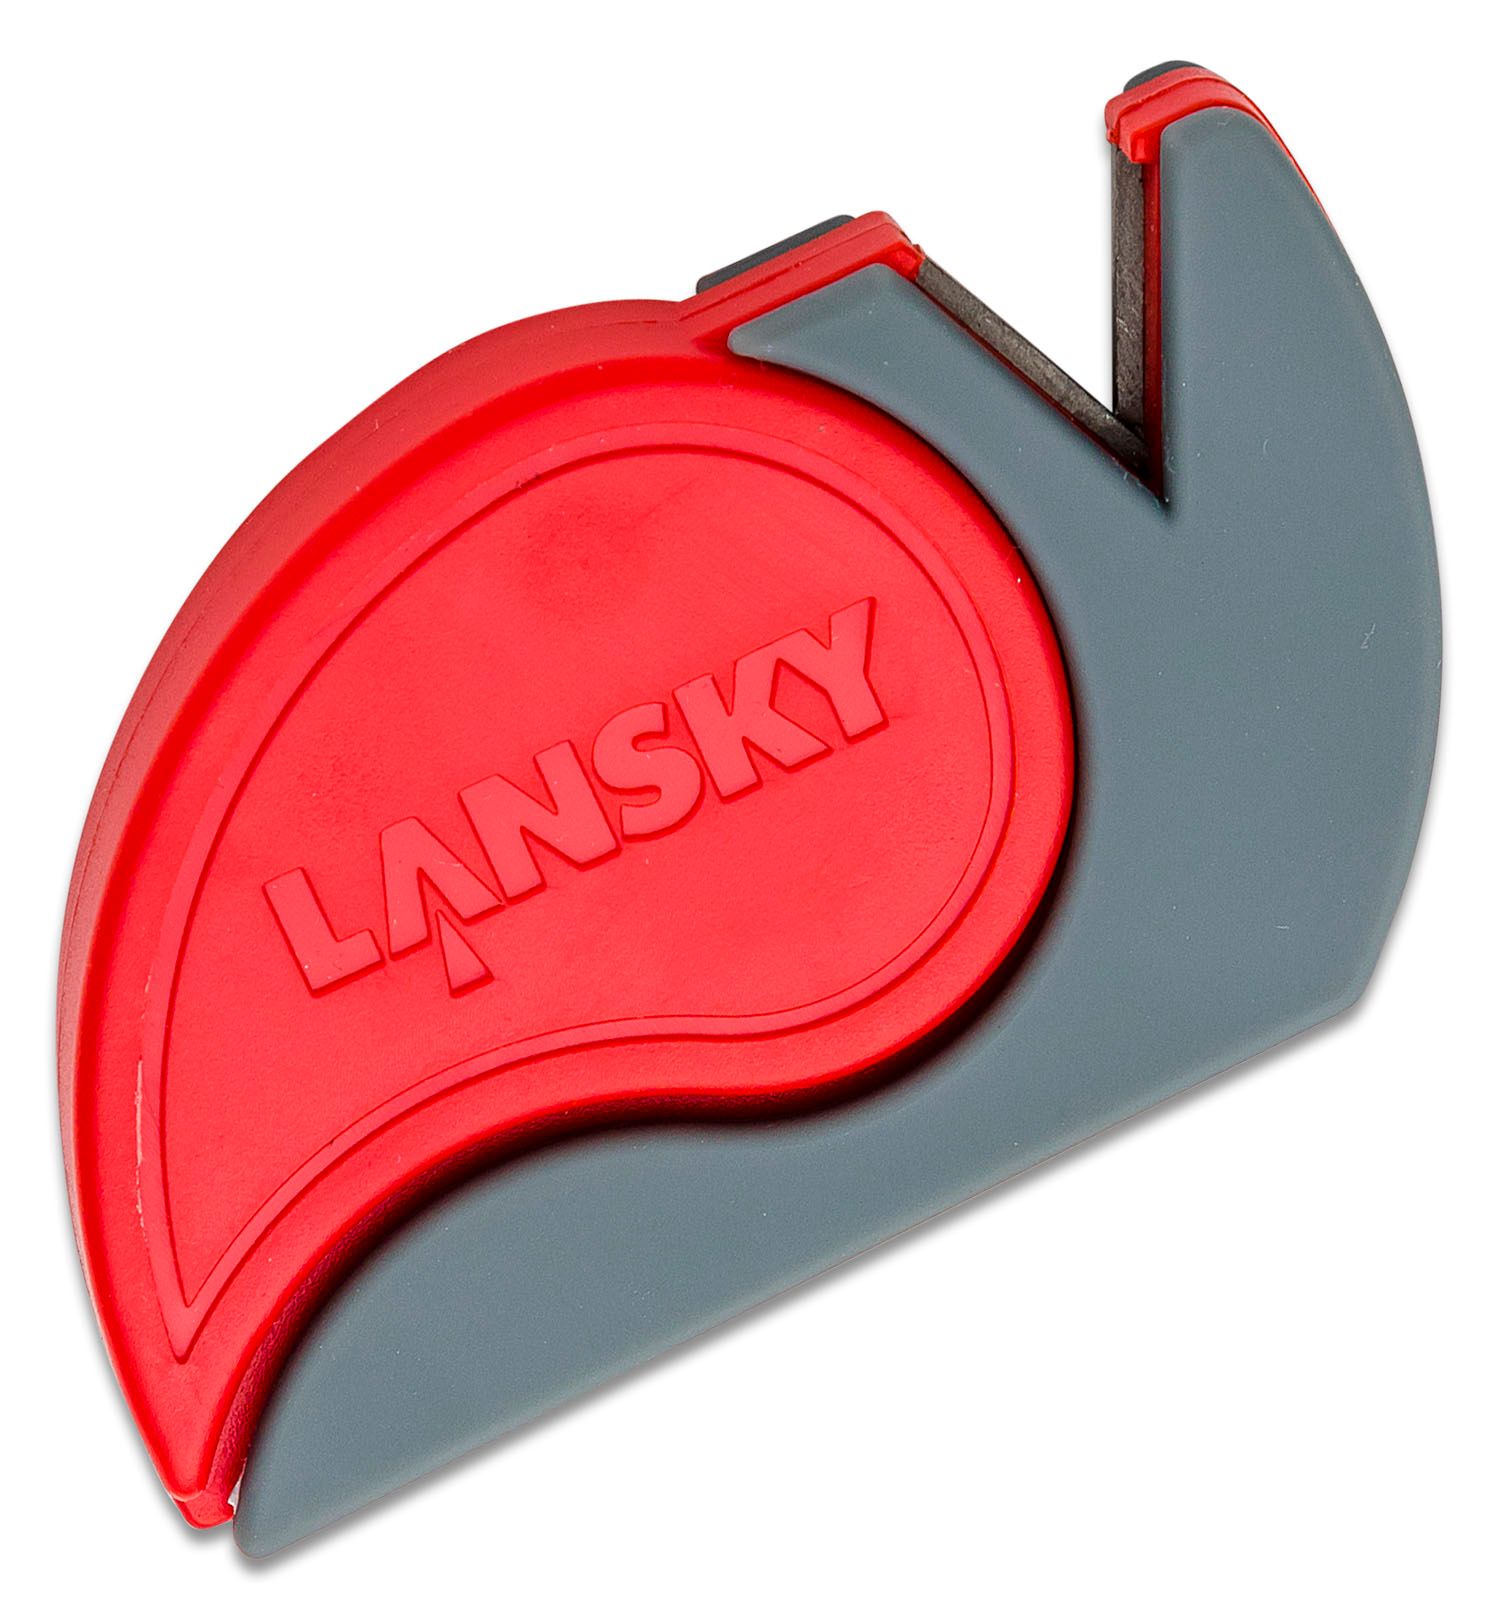 Lansky Sharp'N Cut Tungsten Carbide Sharpener and Cutter - KnifeCenter -  SCUT